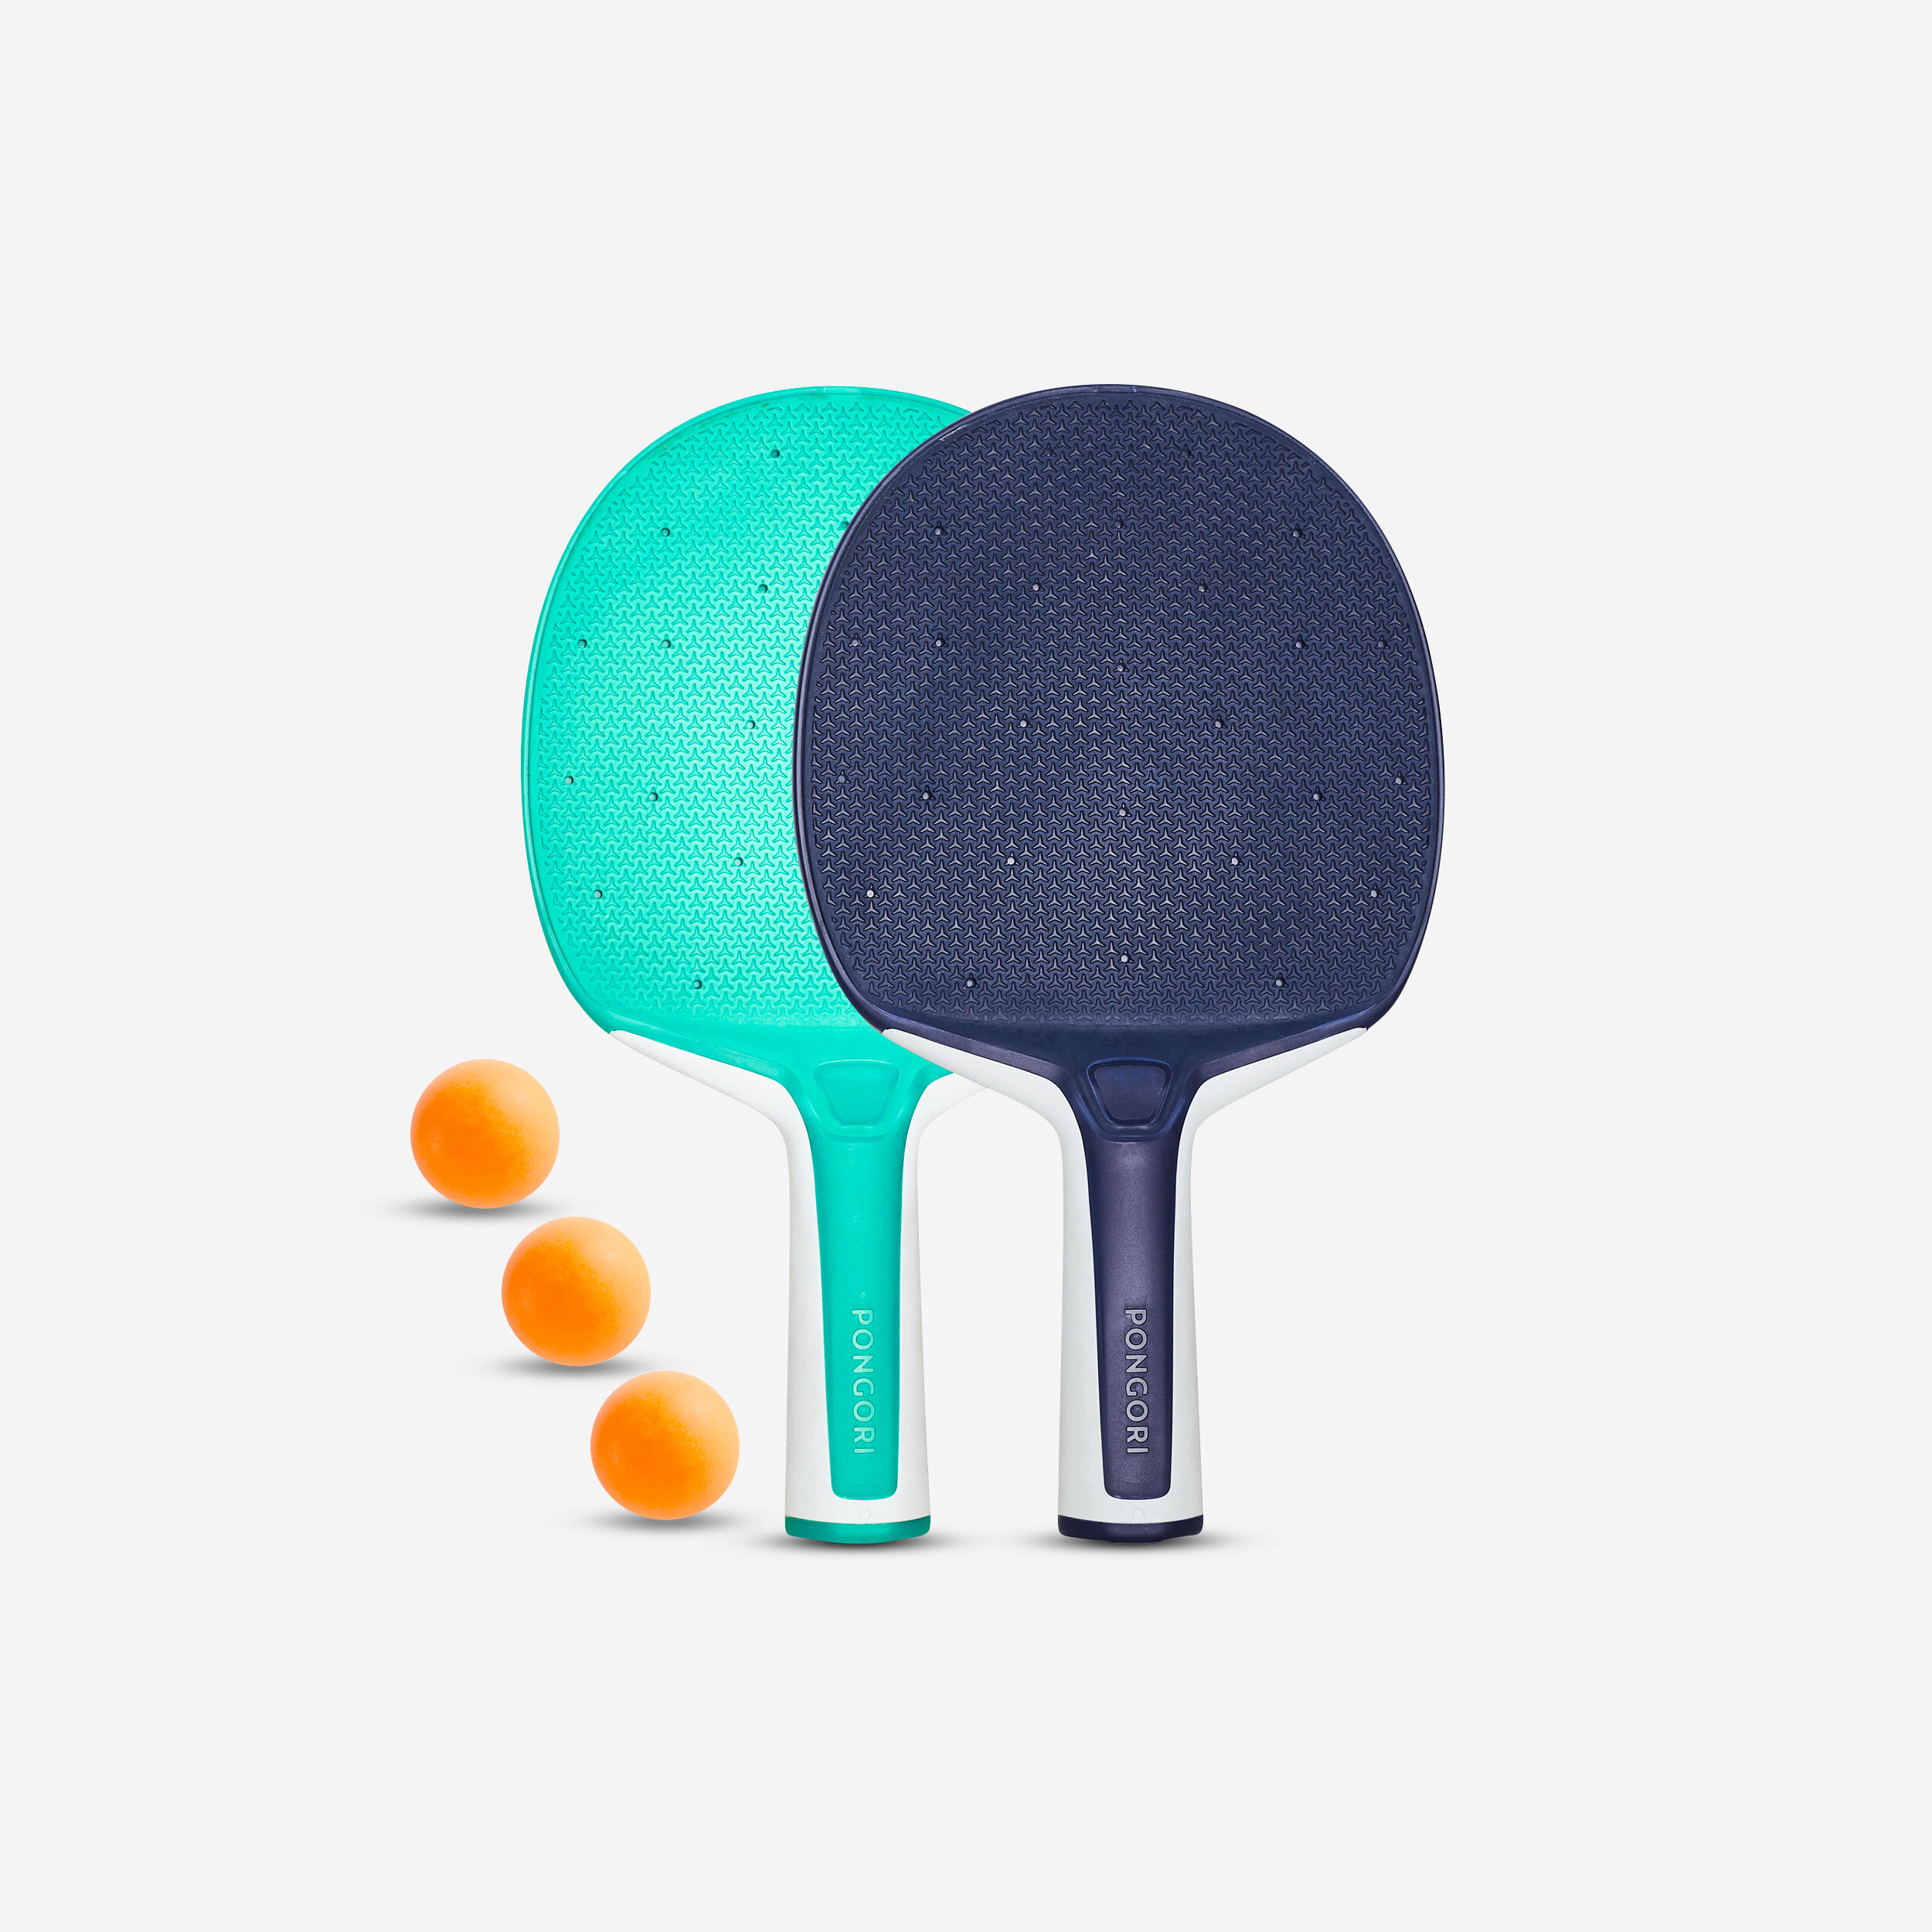 Tischtennisschläger und Bälle tragbar 3 Ping Pong Yovige Tischtennisschläger-Set Indoor Tischtennis-Sets enthält 2 Tischtennisschläger Outdoor wasserdicht 